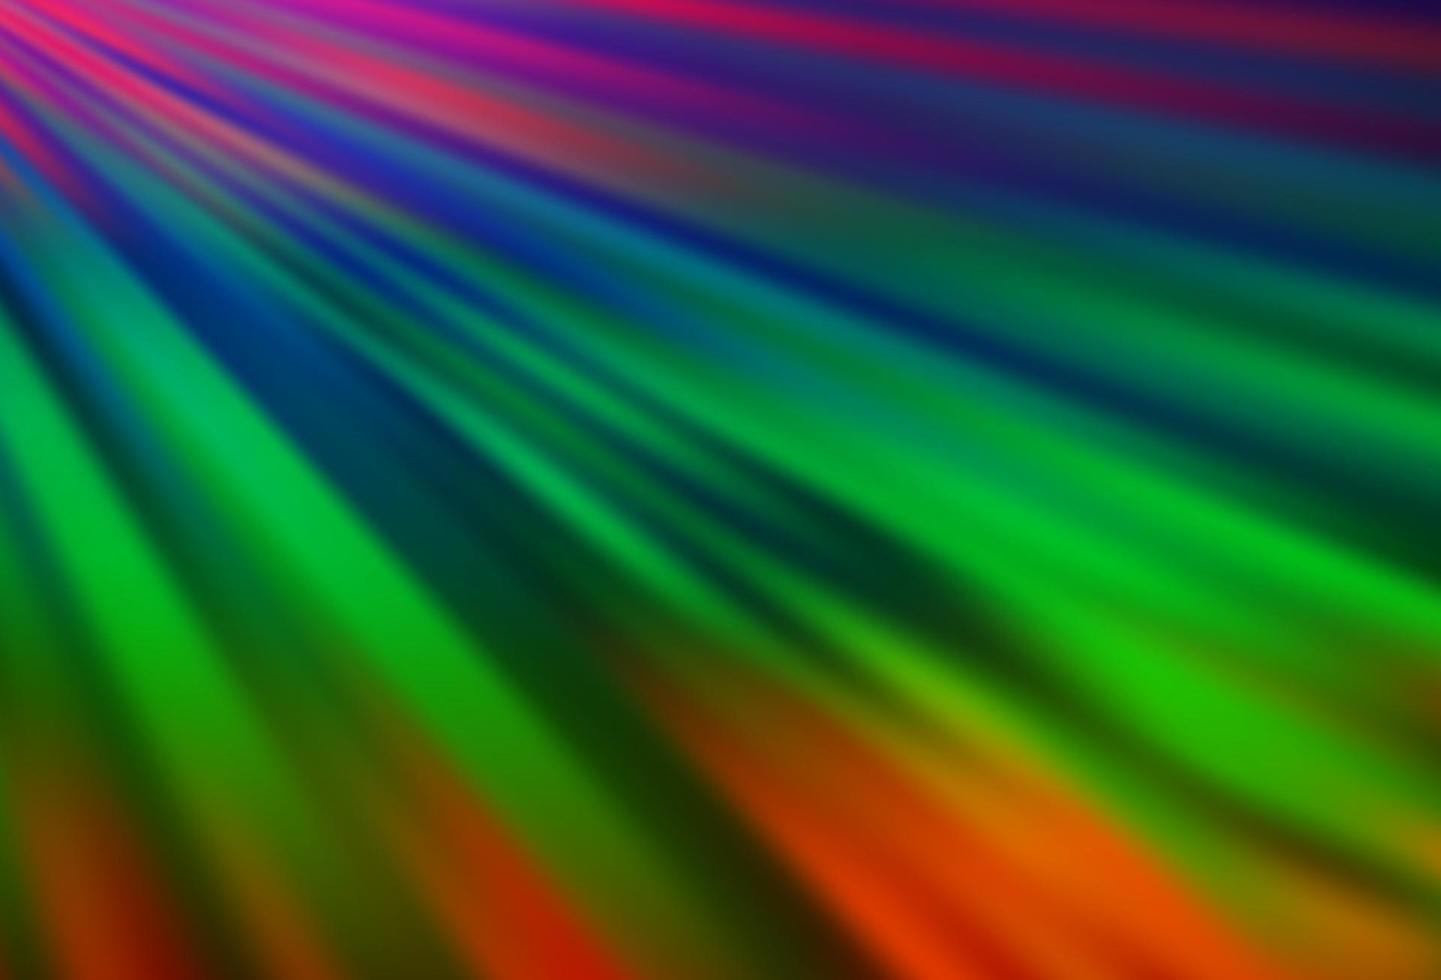 sfondo vettoriale arcobaleno multicolore scuro con lunghe linee.